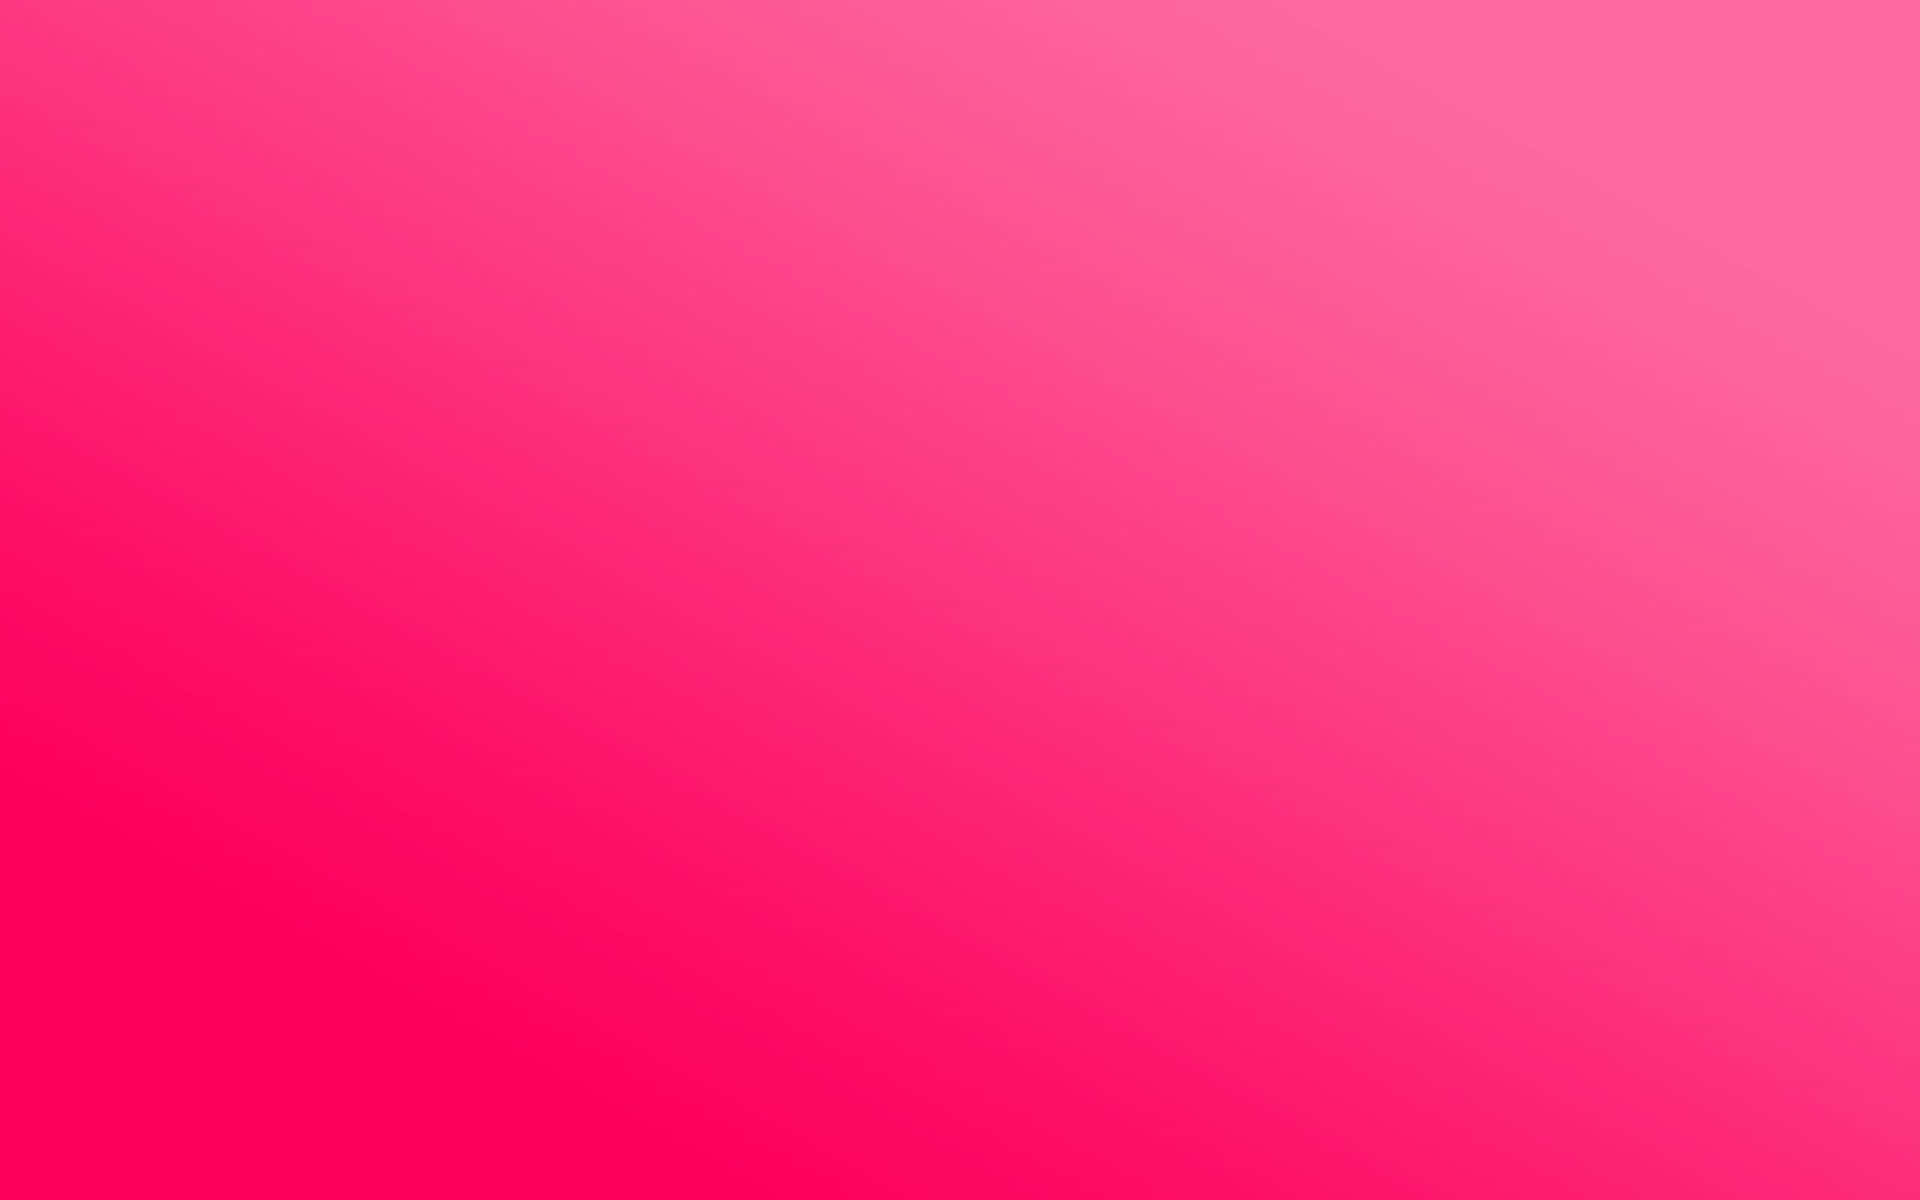 Einleuchtend Pinker Hintergrund Mit Einer Einheitlichen Farbe Wallpaper